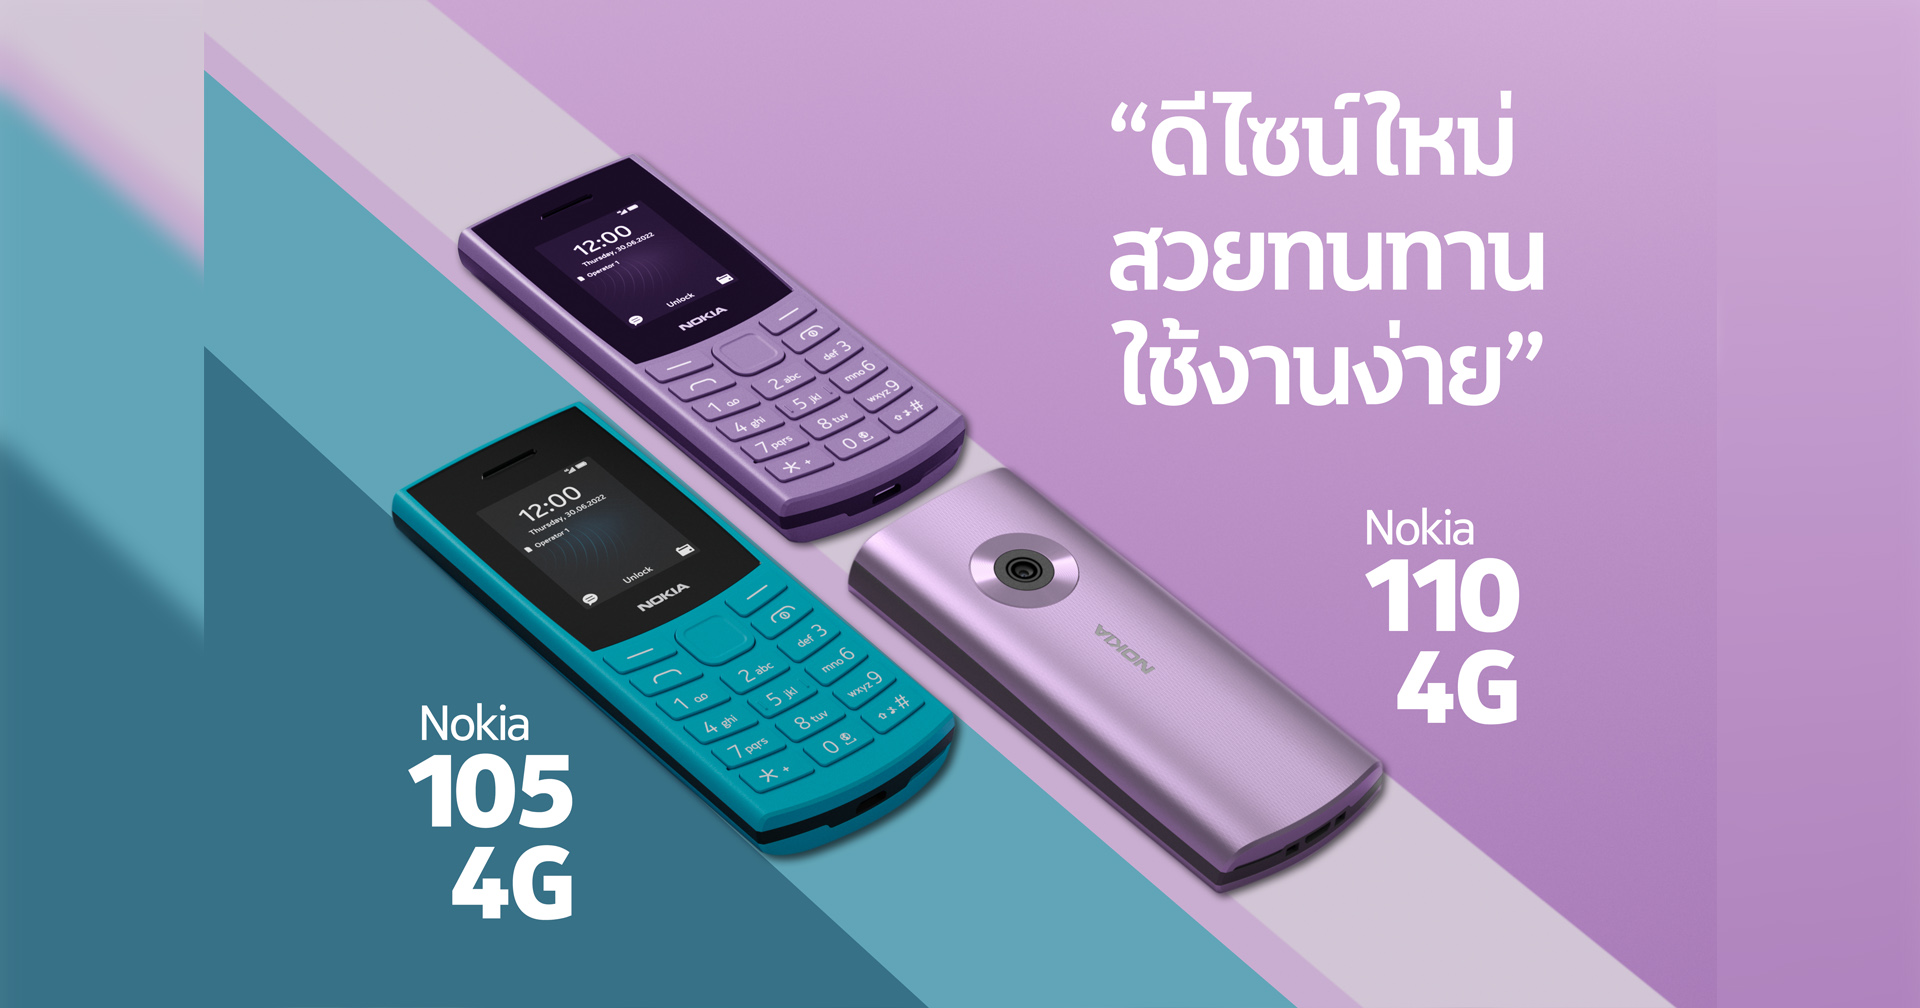 พร้อมจำหน่ายแล้ว Nokia 110 4G และ 105 4G ฟีเจอร์โฟนรุ่นอัปเกรดใหม่ เริ่มต้นเพียง 1,290.-